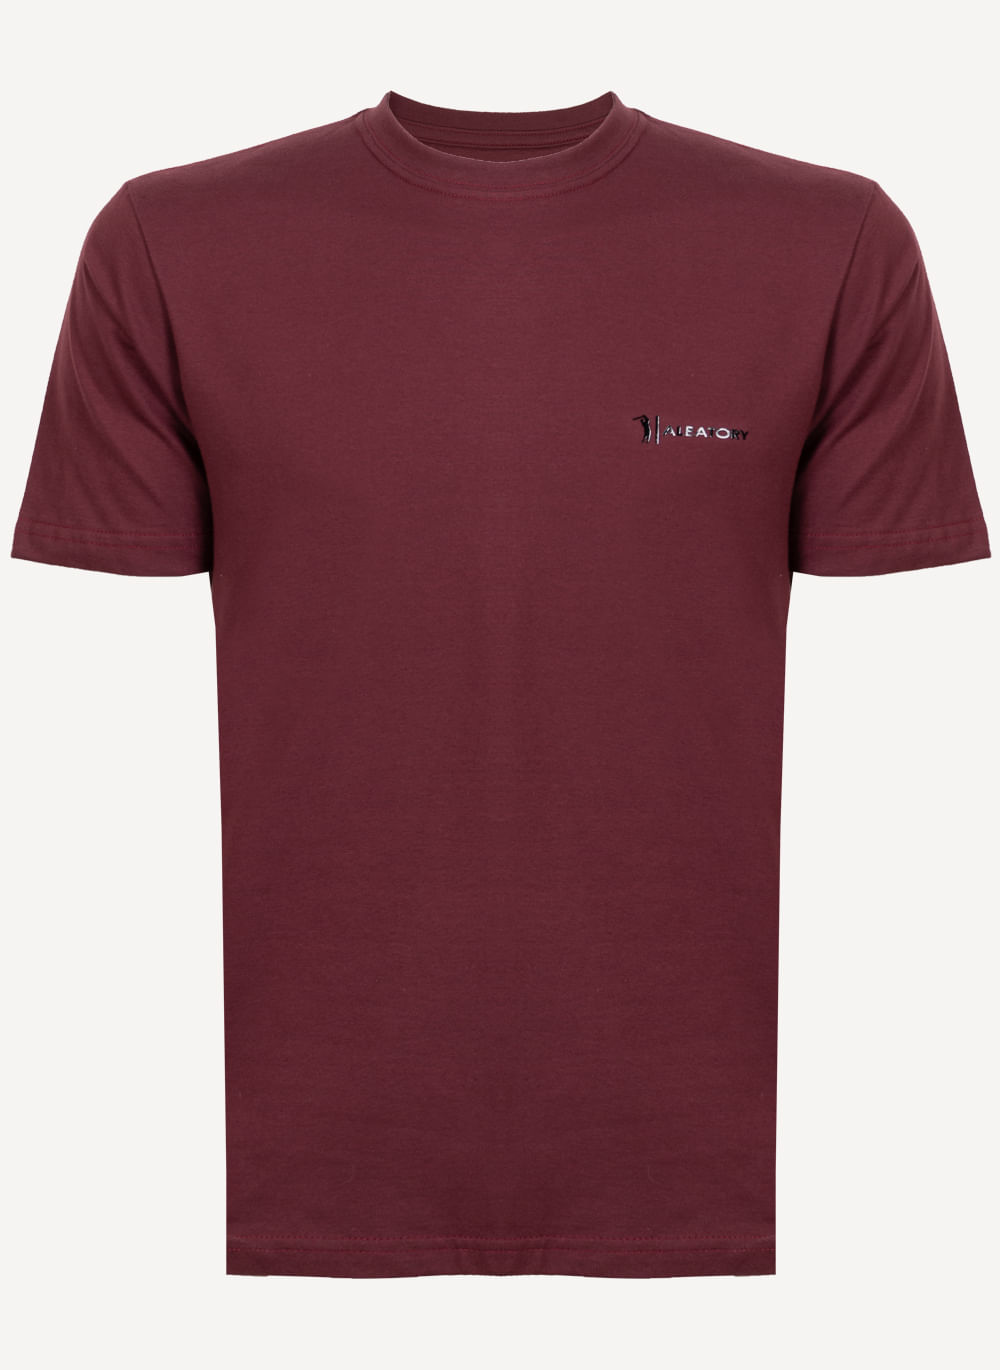 Camiseta-Aleatory-Estampada-Power-Vinho-Vinho-P